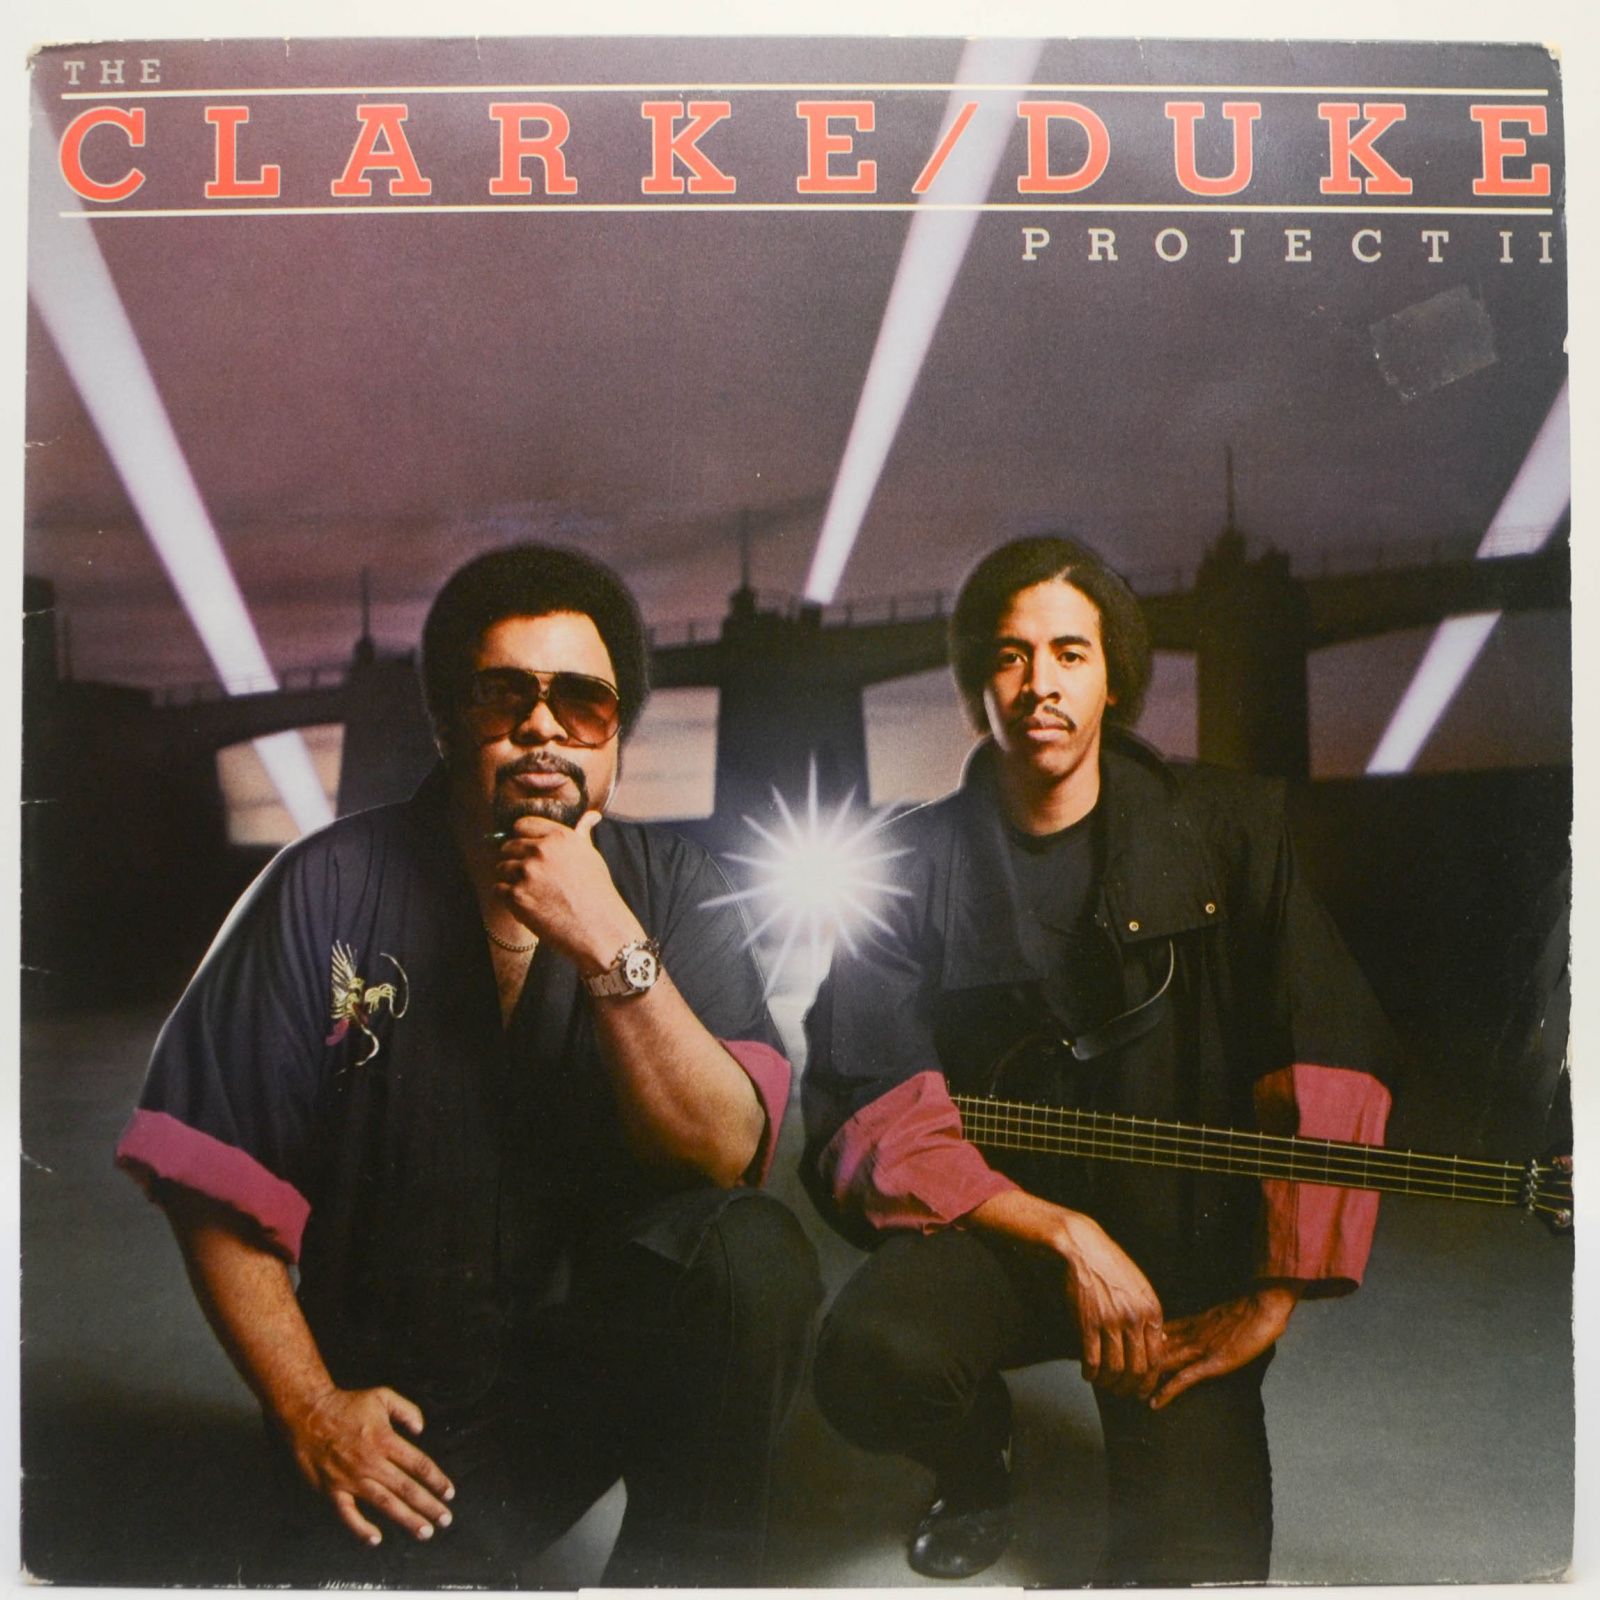 Clarke/Duke Project — The Clarke / Duke Project II, 1983